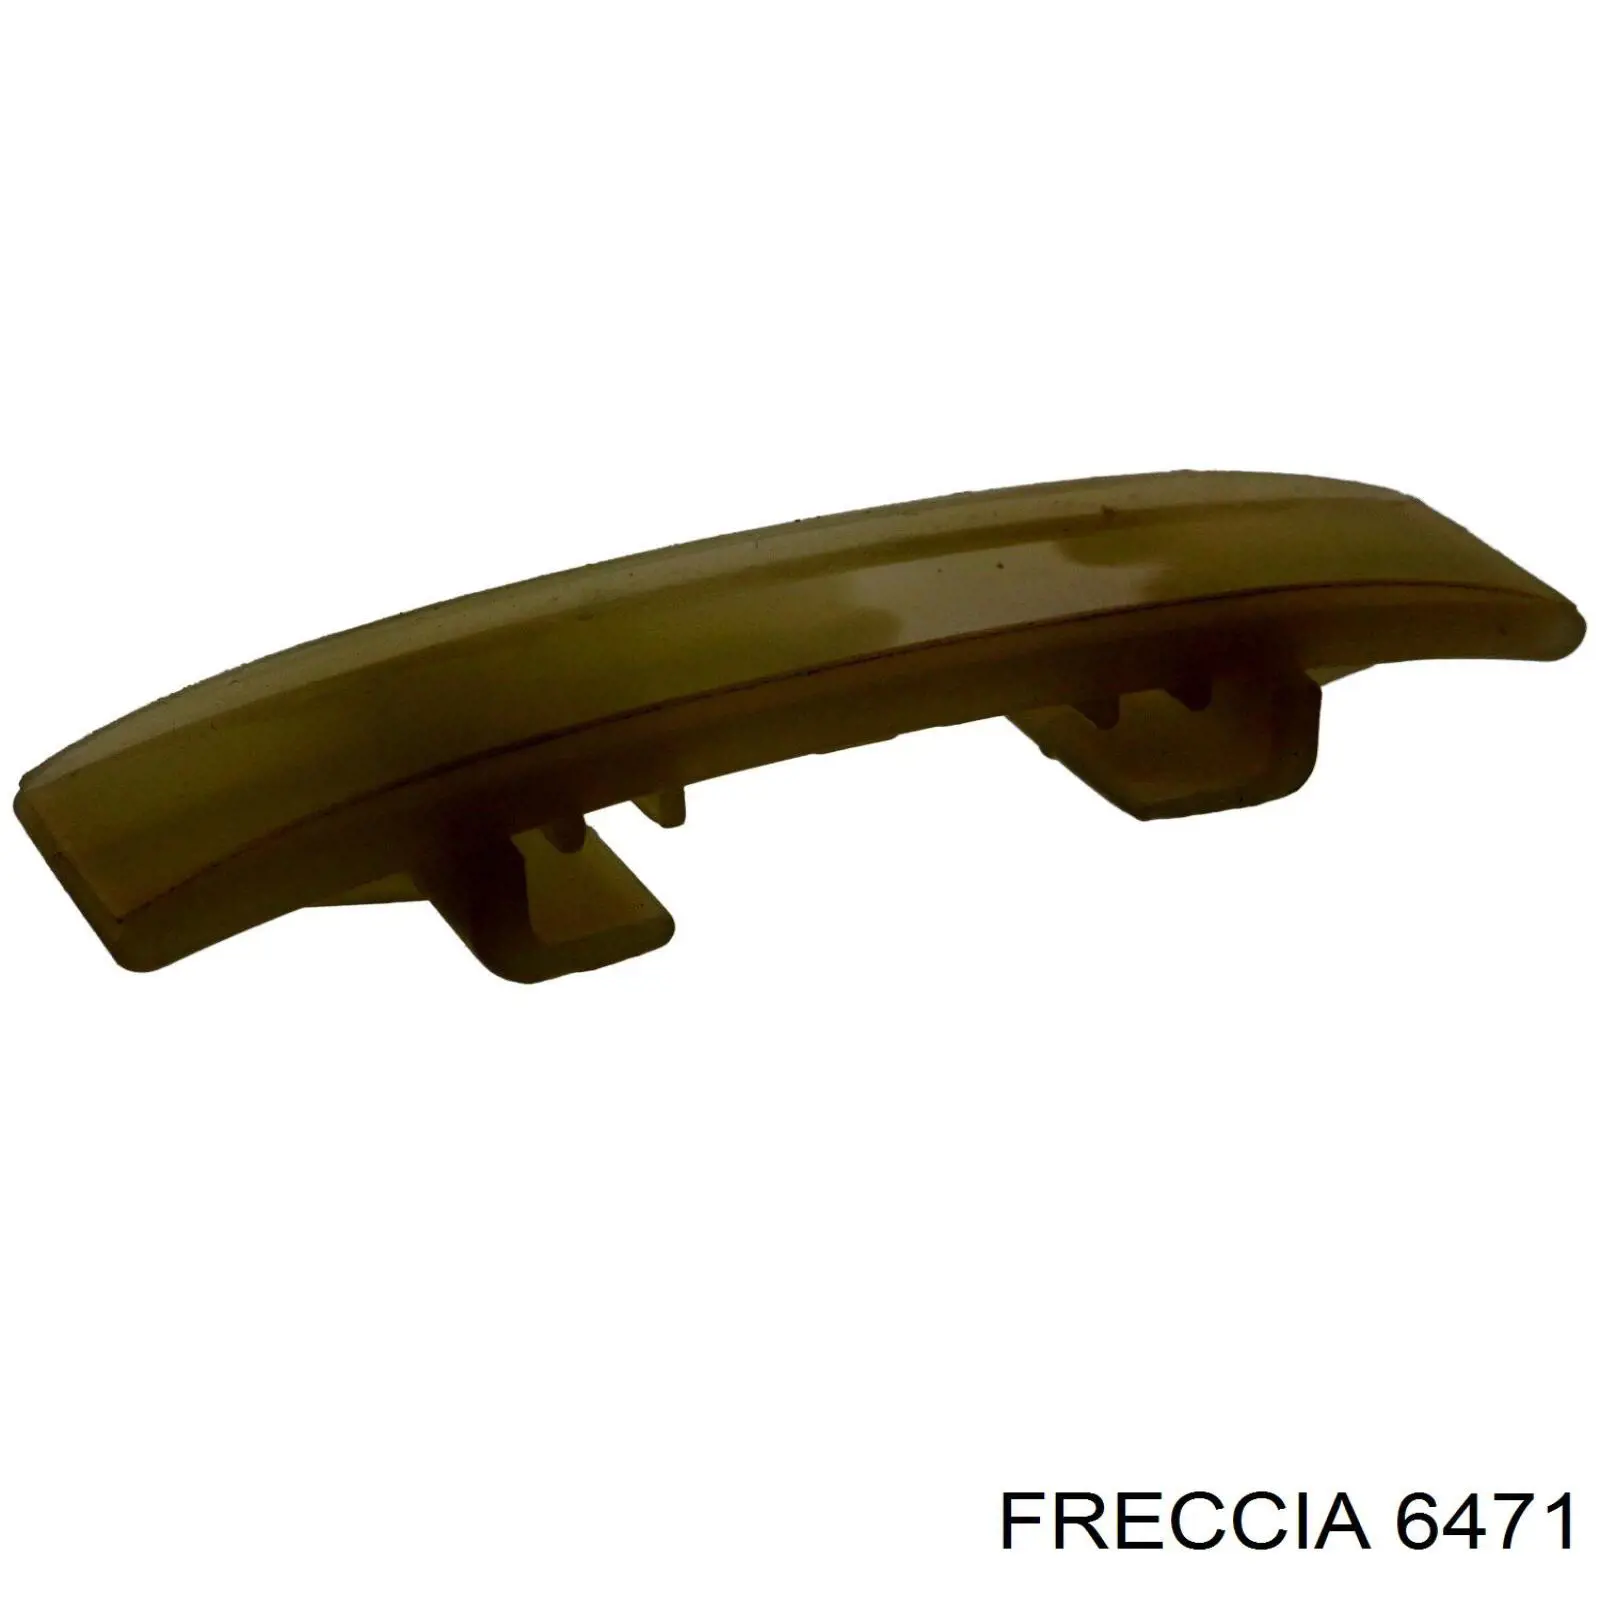 6471 Freccia выпускной клапан